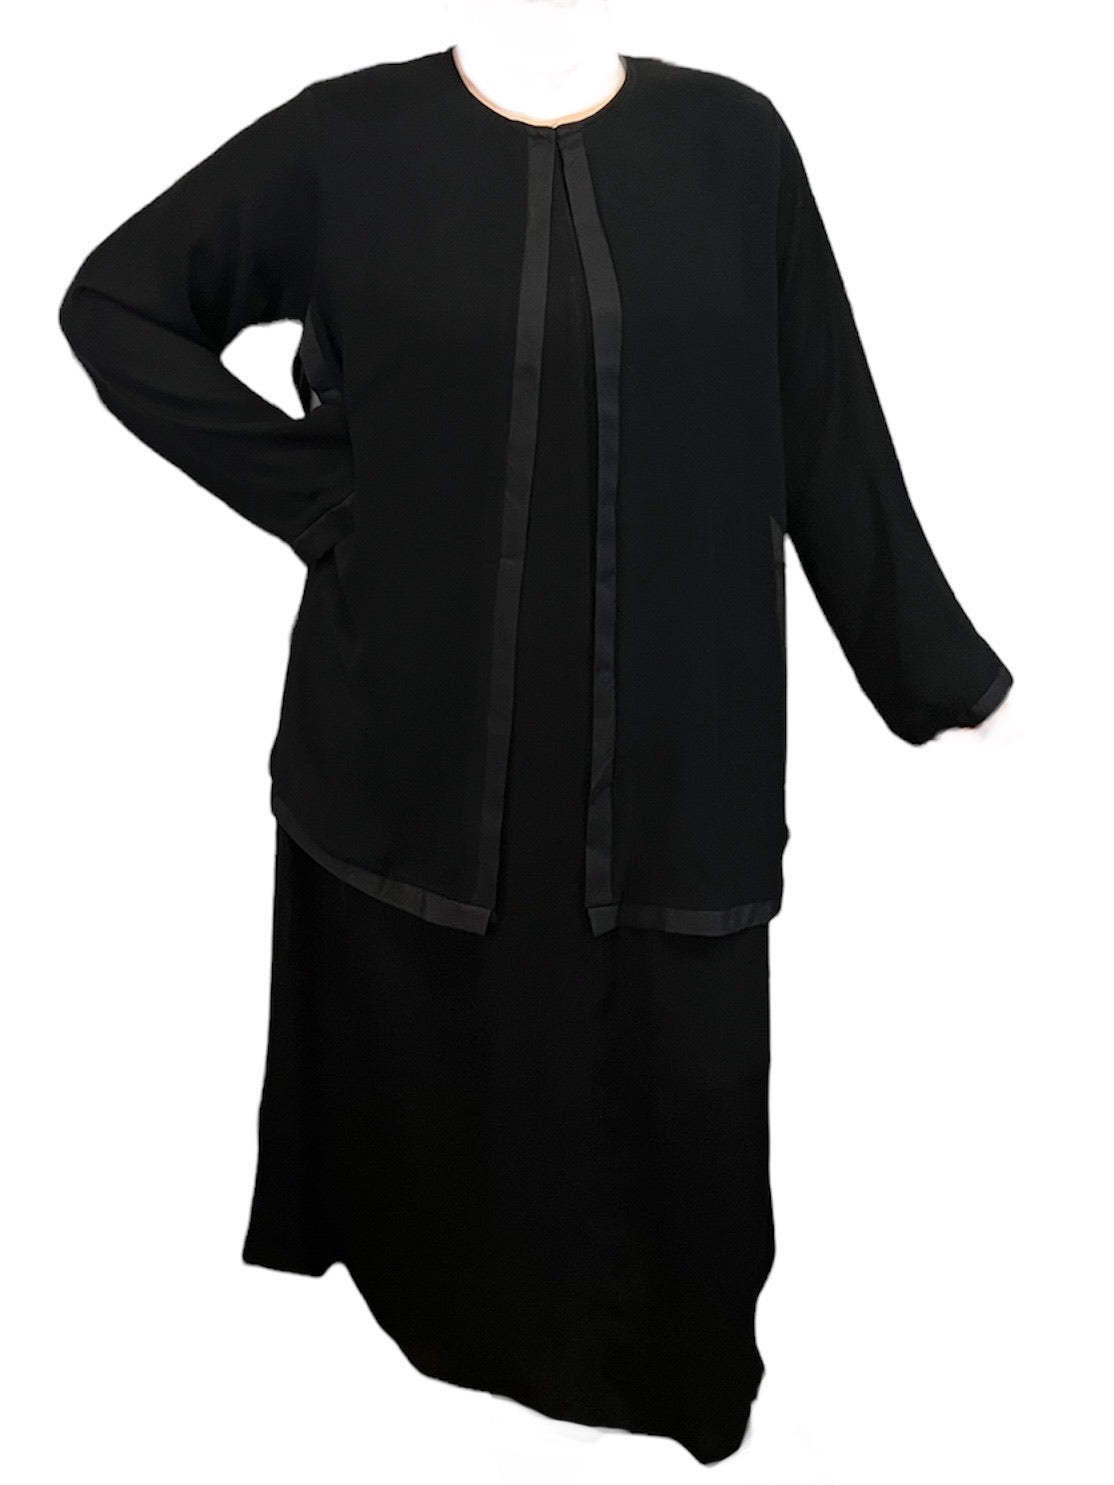 Black Kuwaiti Abayas Variants 1-16 Middle Eastern Boutique